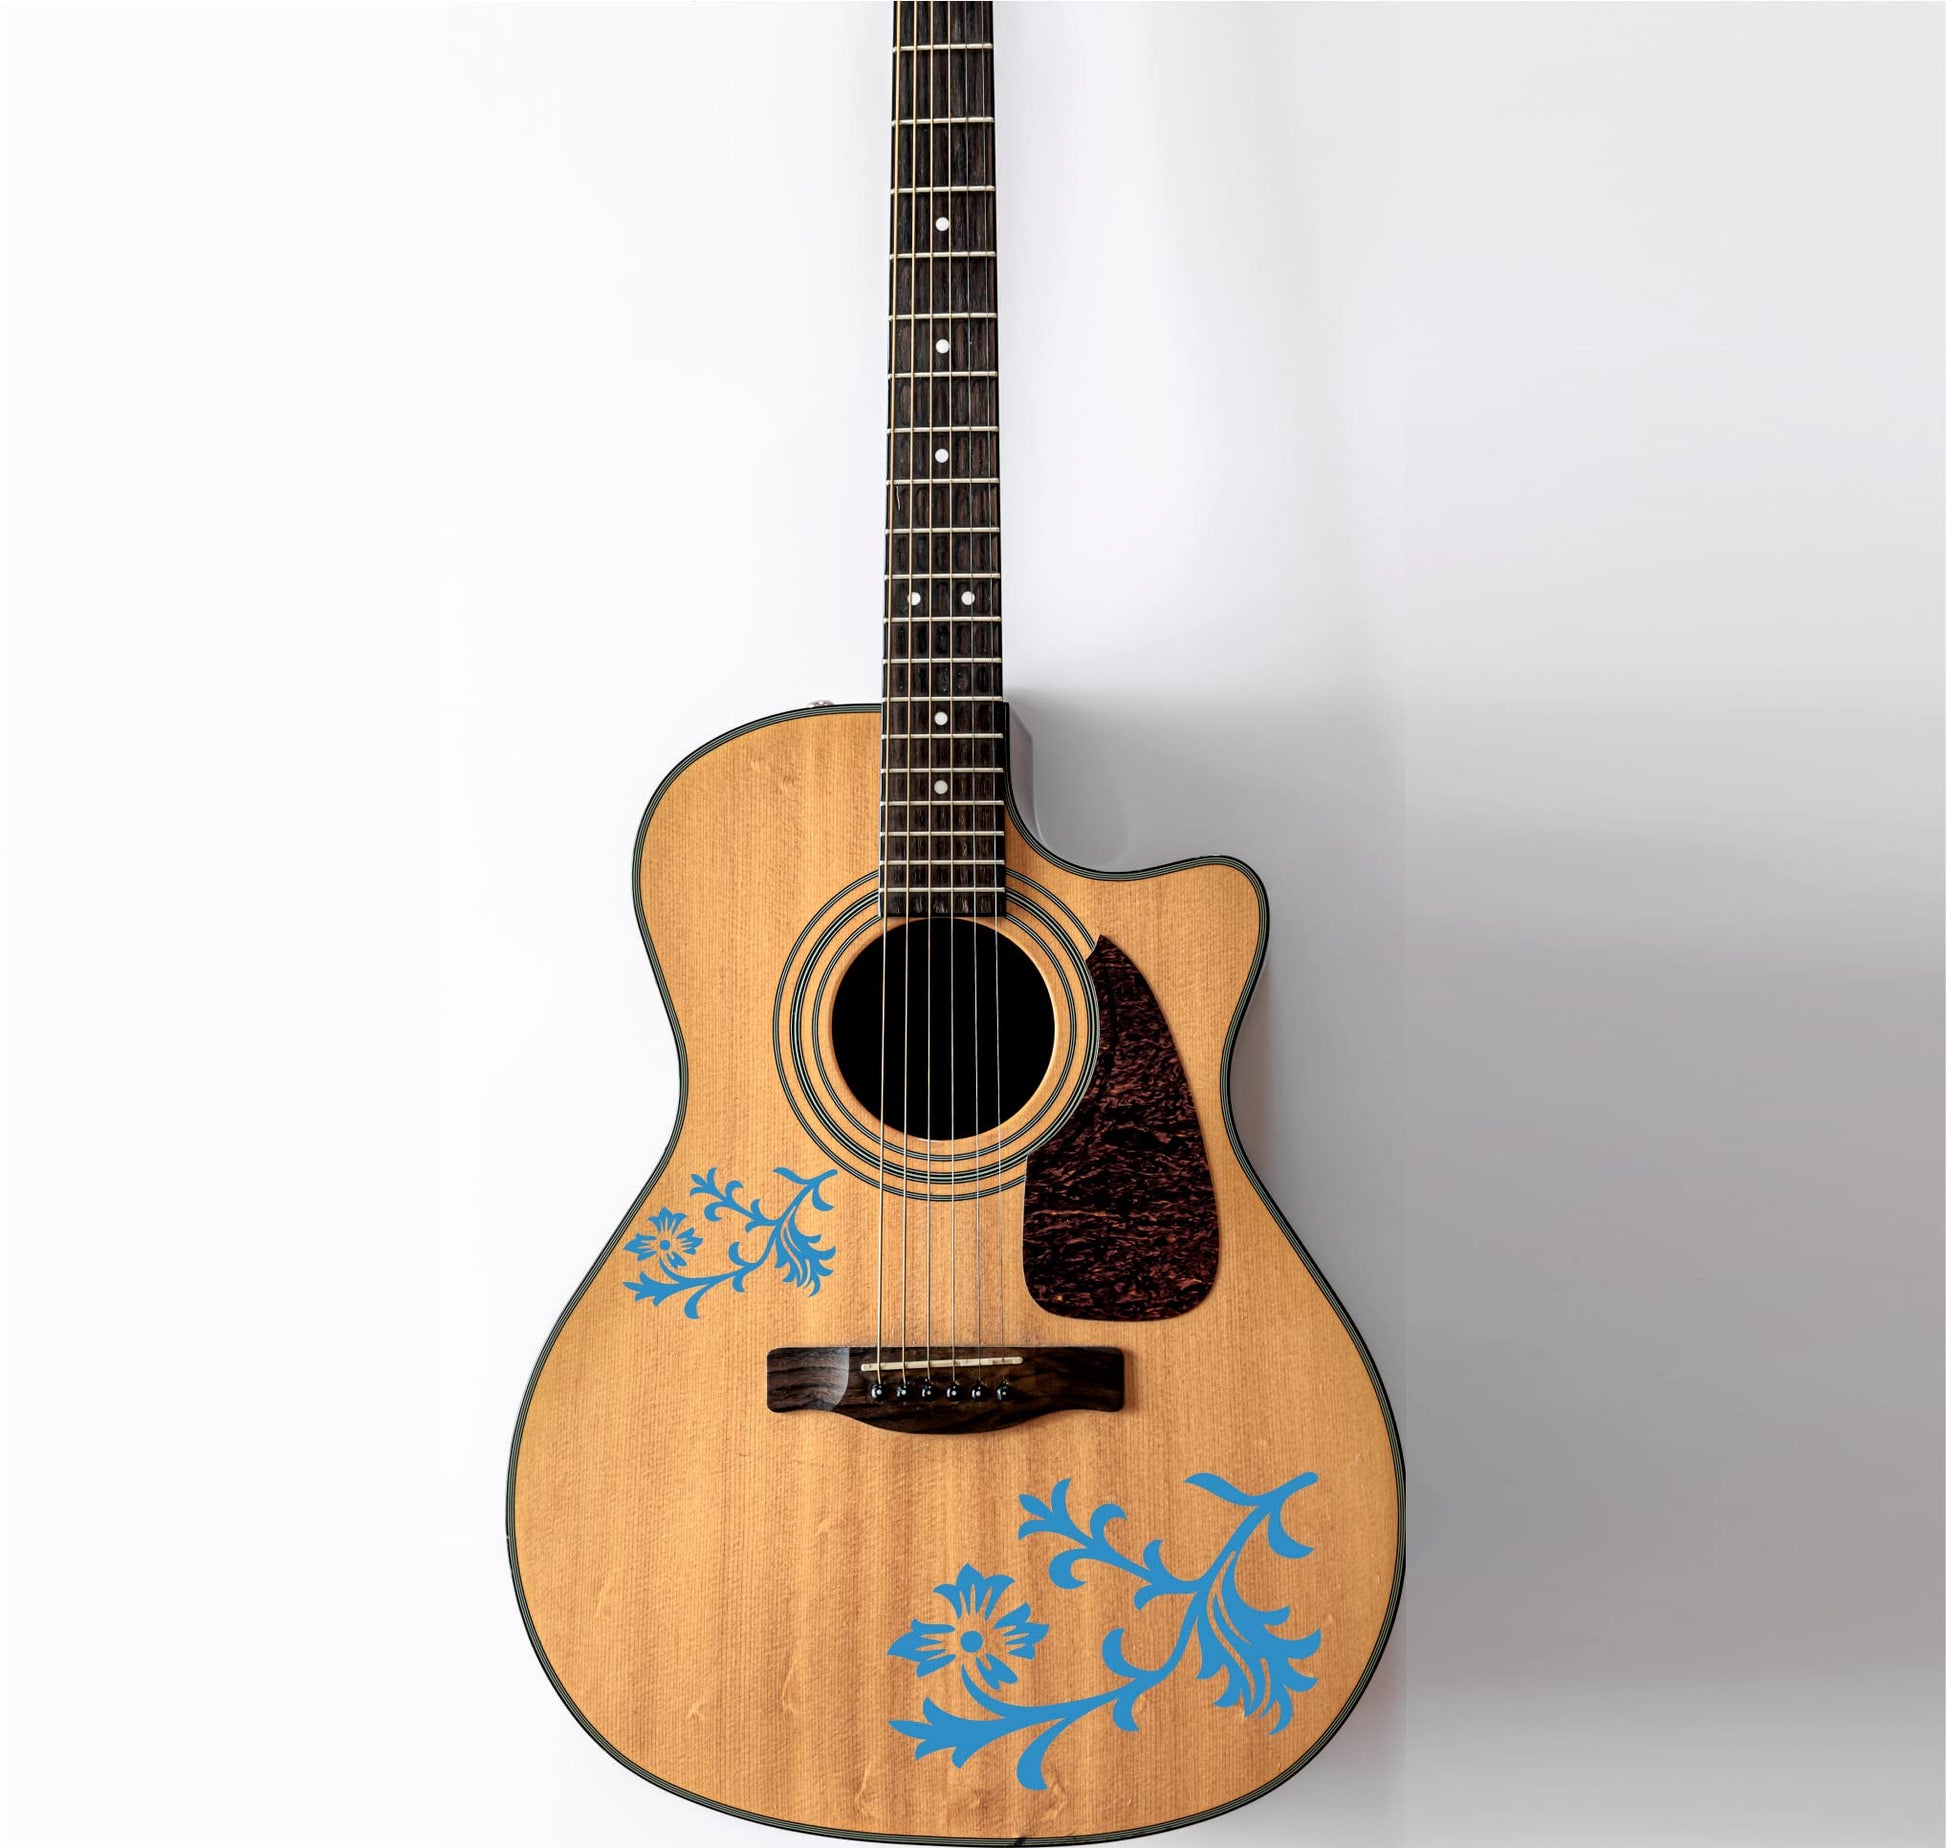 DualColorStampe Adesivi per chitarra classica elettrica basso Fiori (kit da 2 pezzi) decalcomania per chitarra stickers - X0004 a €13.99 solo da DualColorStampe